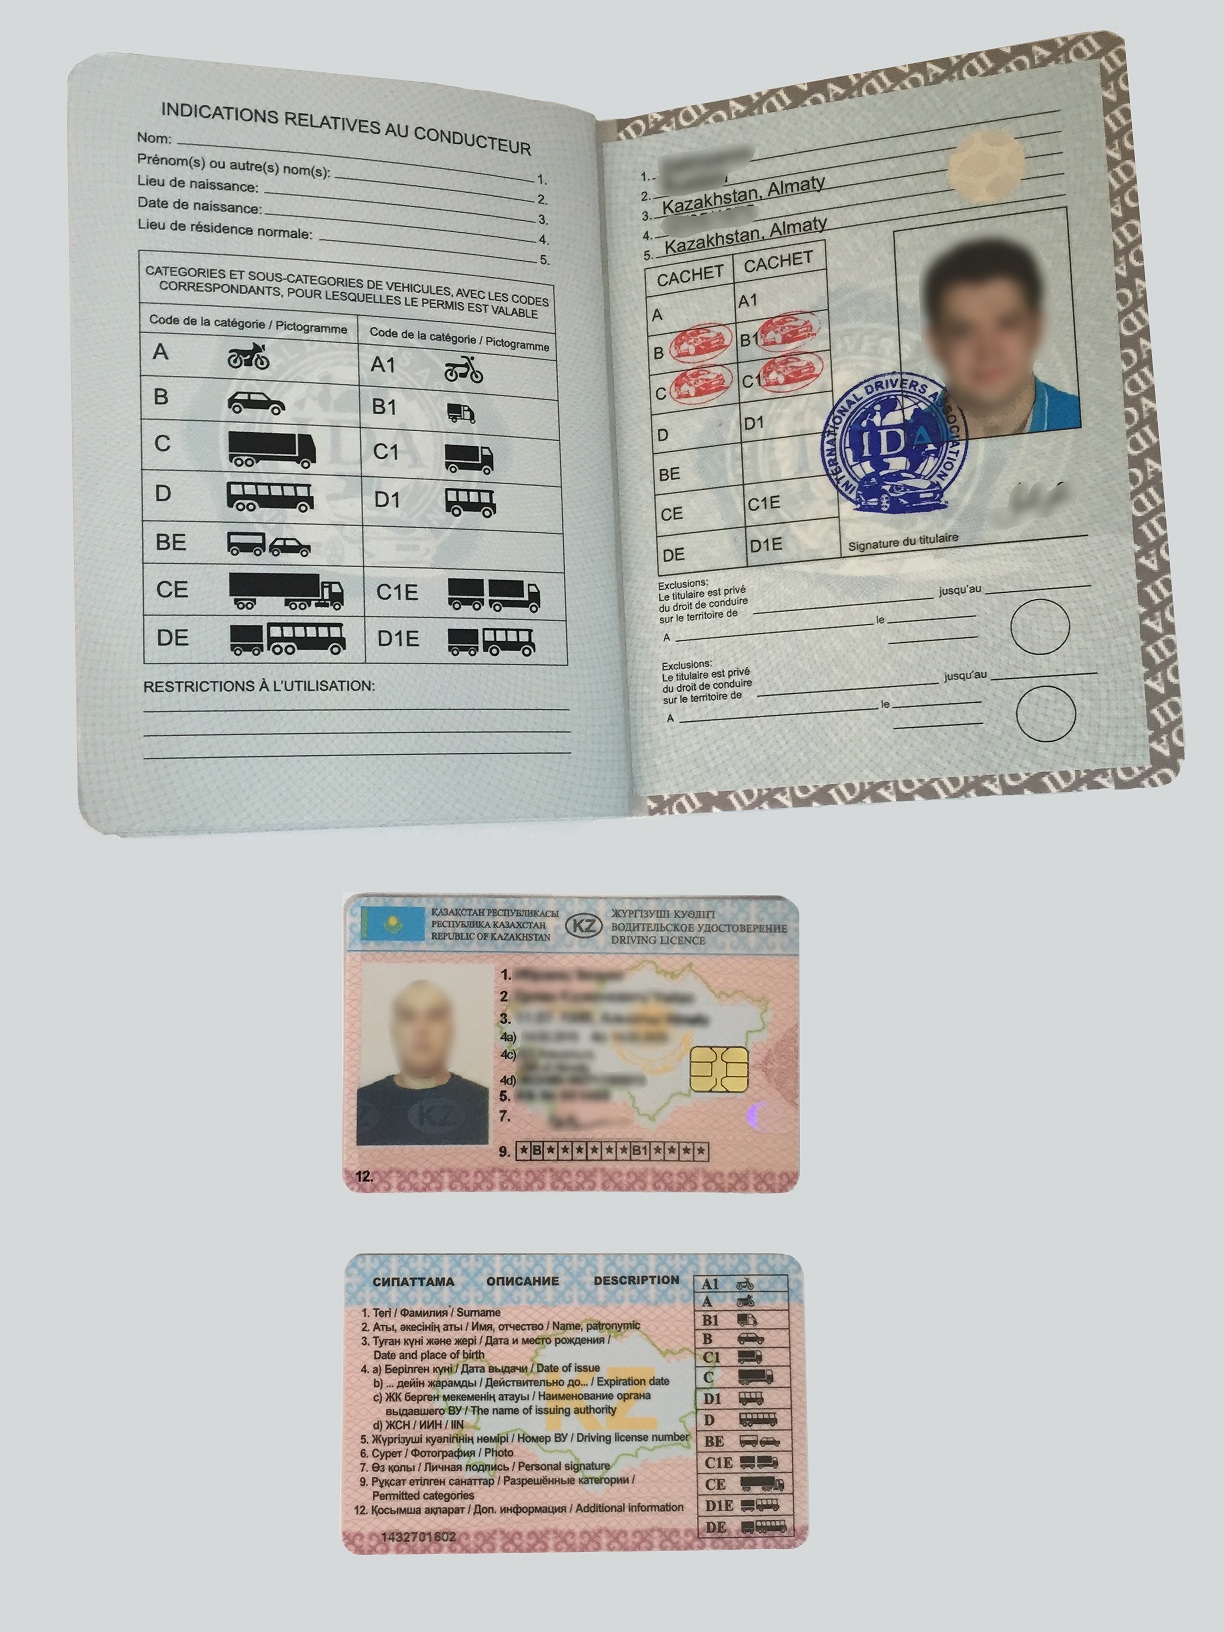 международное водительское удостоверение фото нового образца